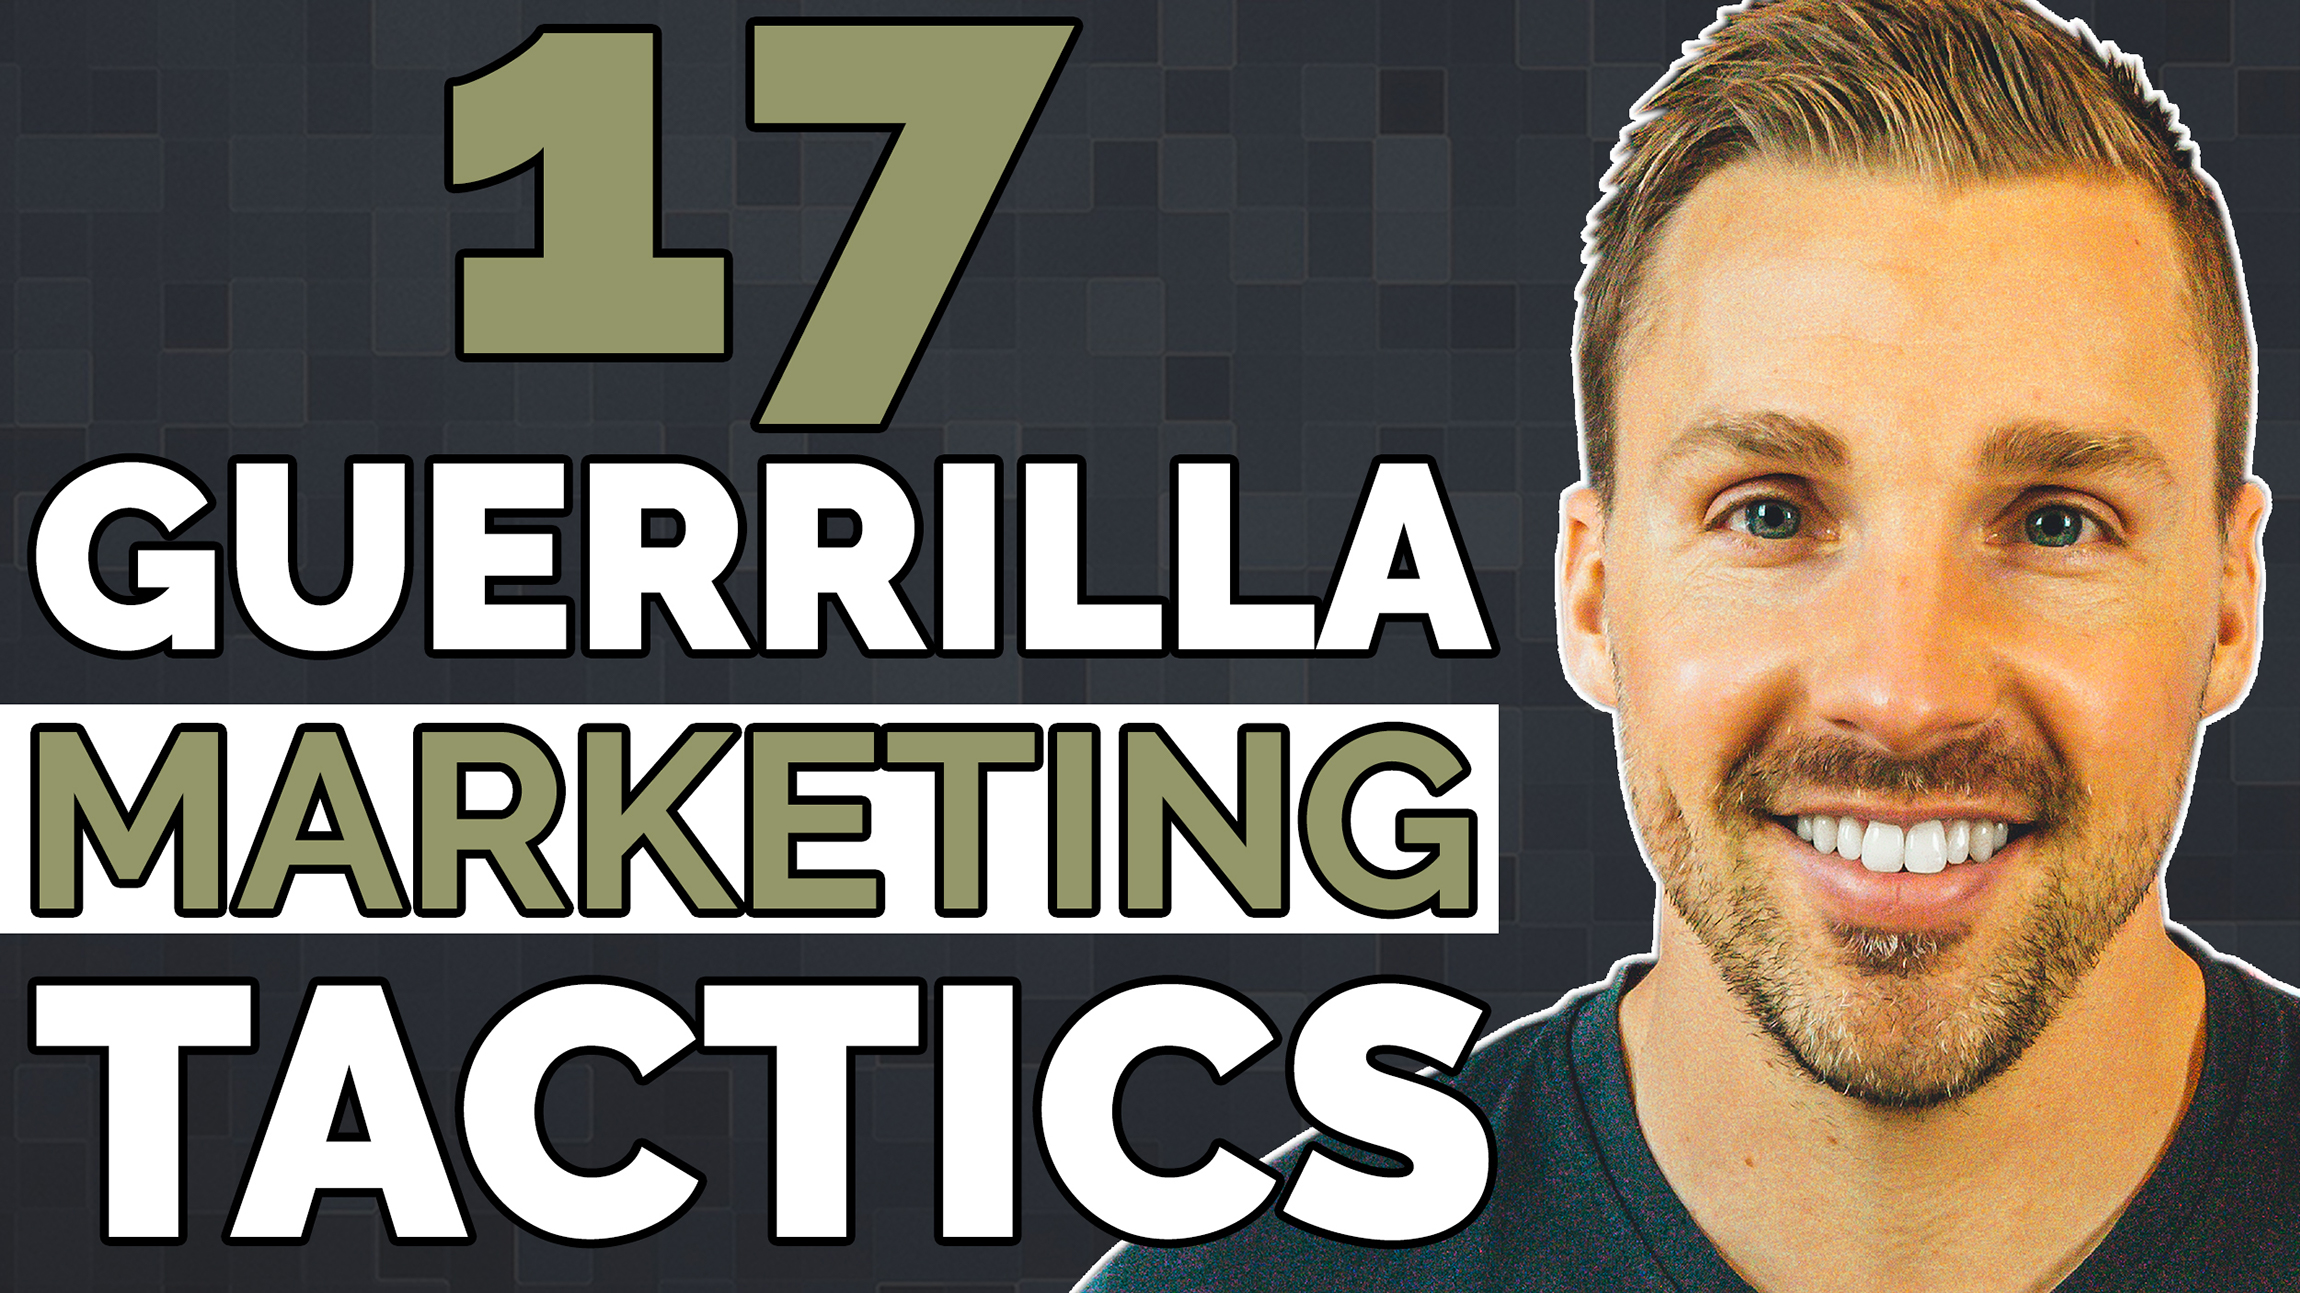 17 guerrilla marketing tactics for entrepreneurs-2